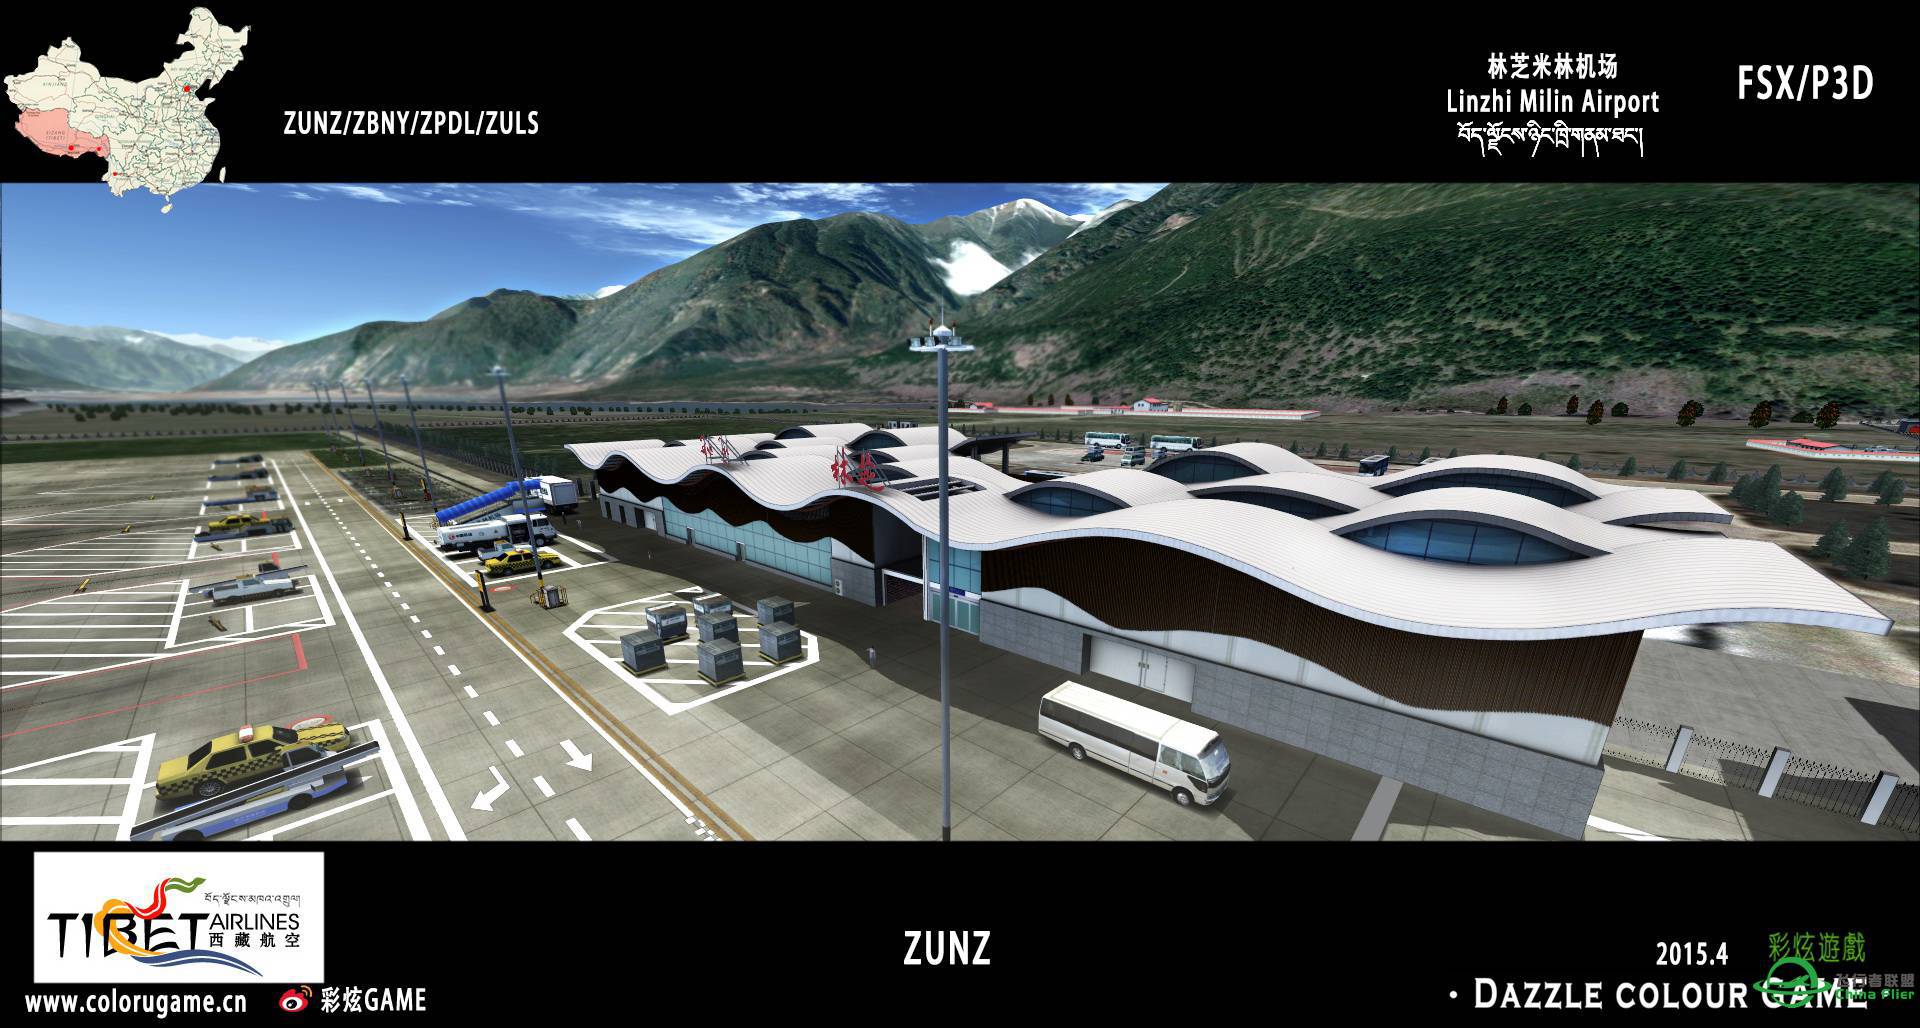 彩炫地景：林芝米林机场（ZUNZ）正式发布！-6650 